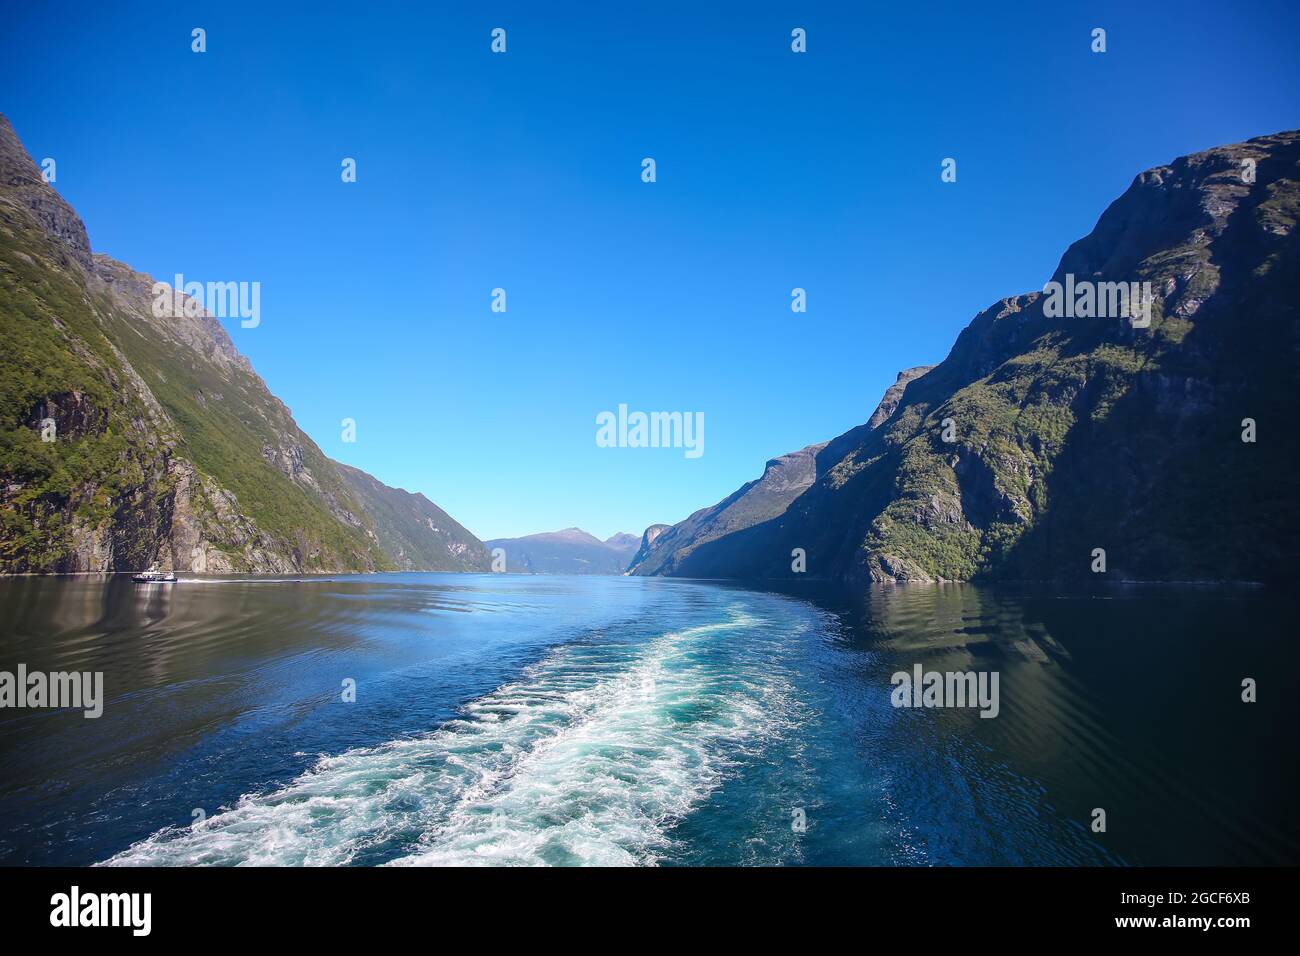 Wachen Sie vom Schiff auf, während Sie den Geiranger Fjord entlang fahren. Schöne Landschaft mit Klippen und Reflexen der Berge im Wasser, Norwegen. Stockfoto